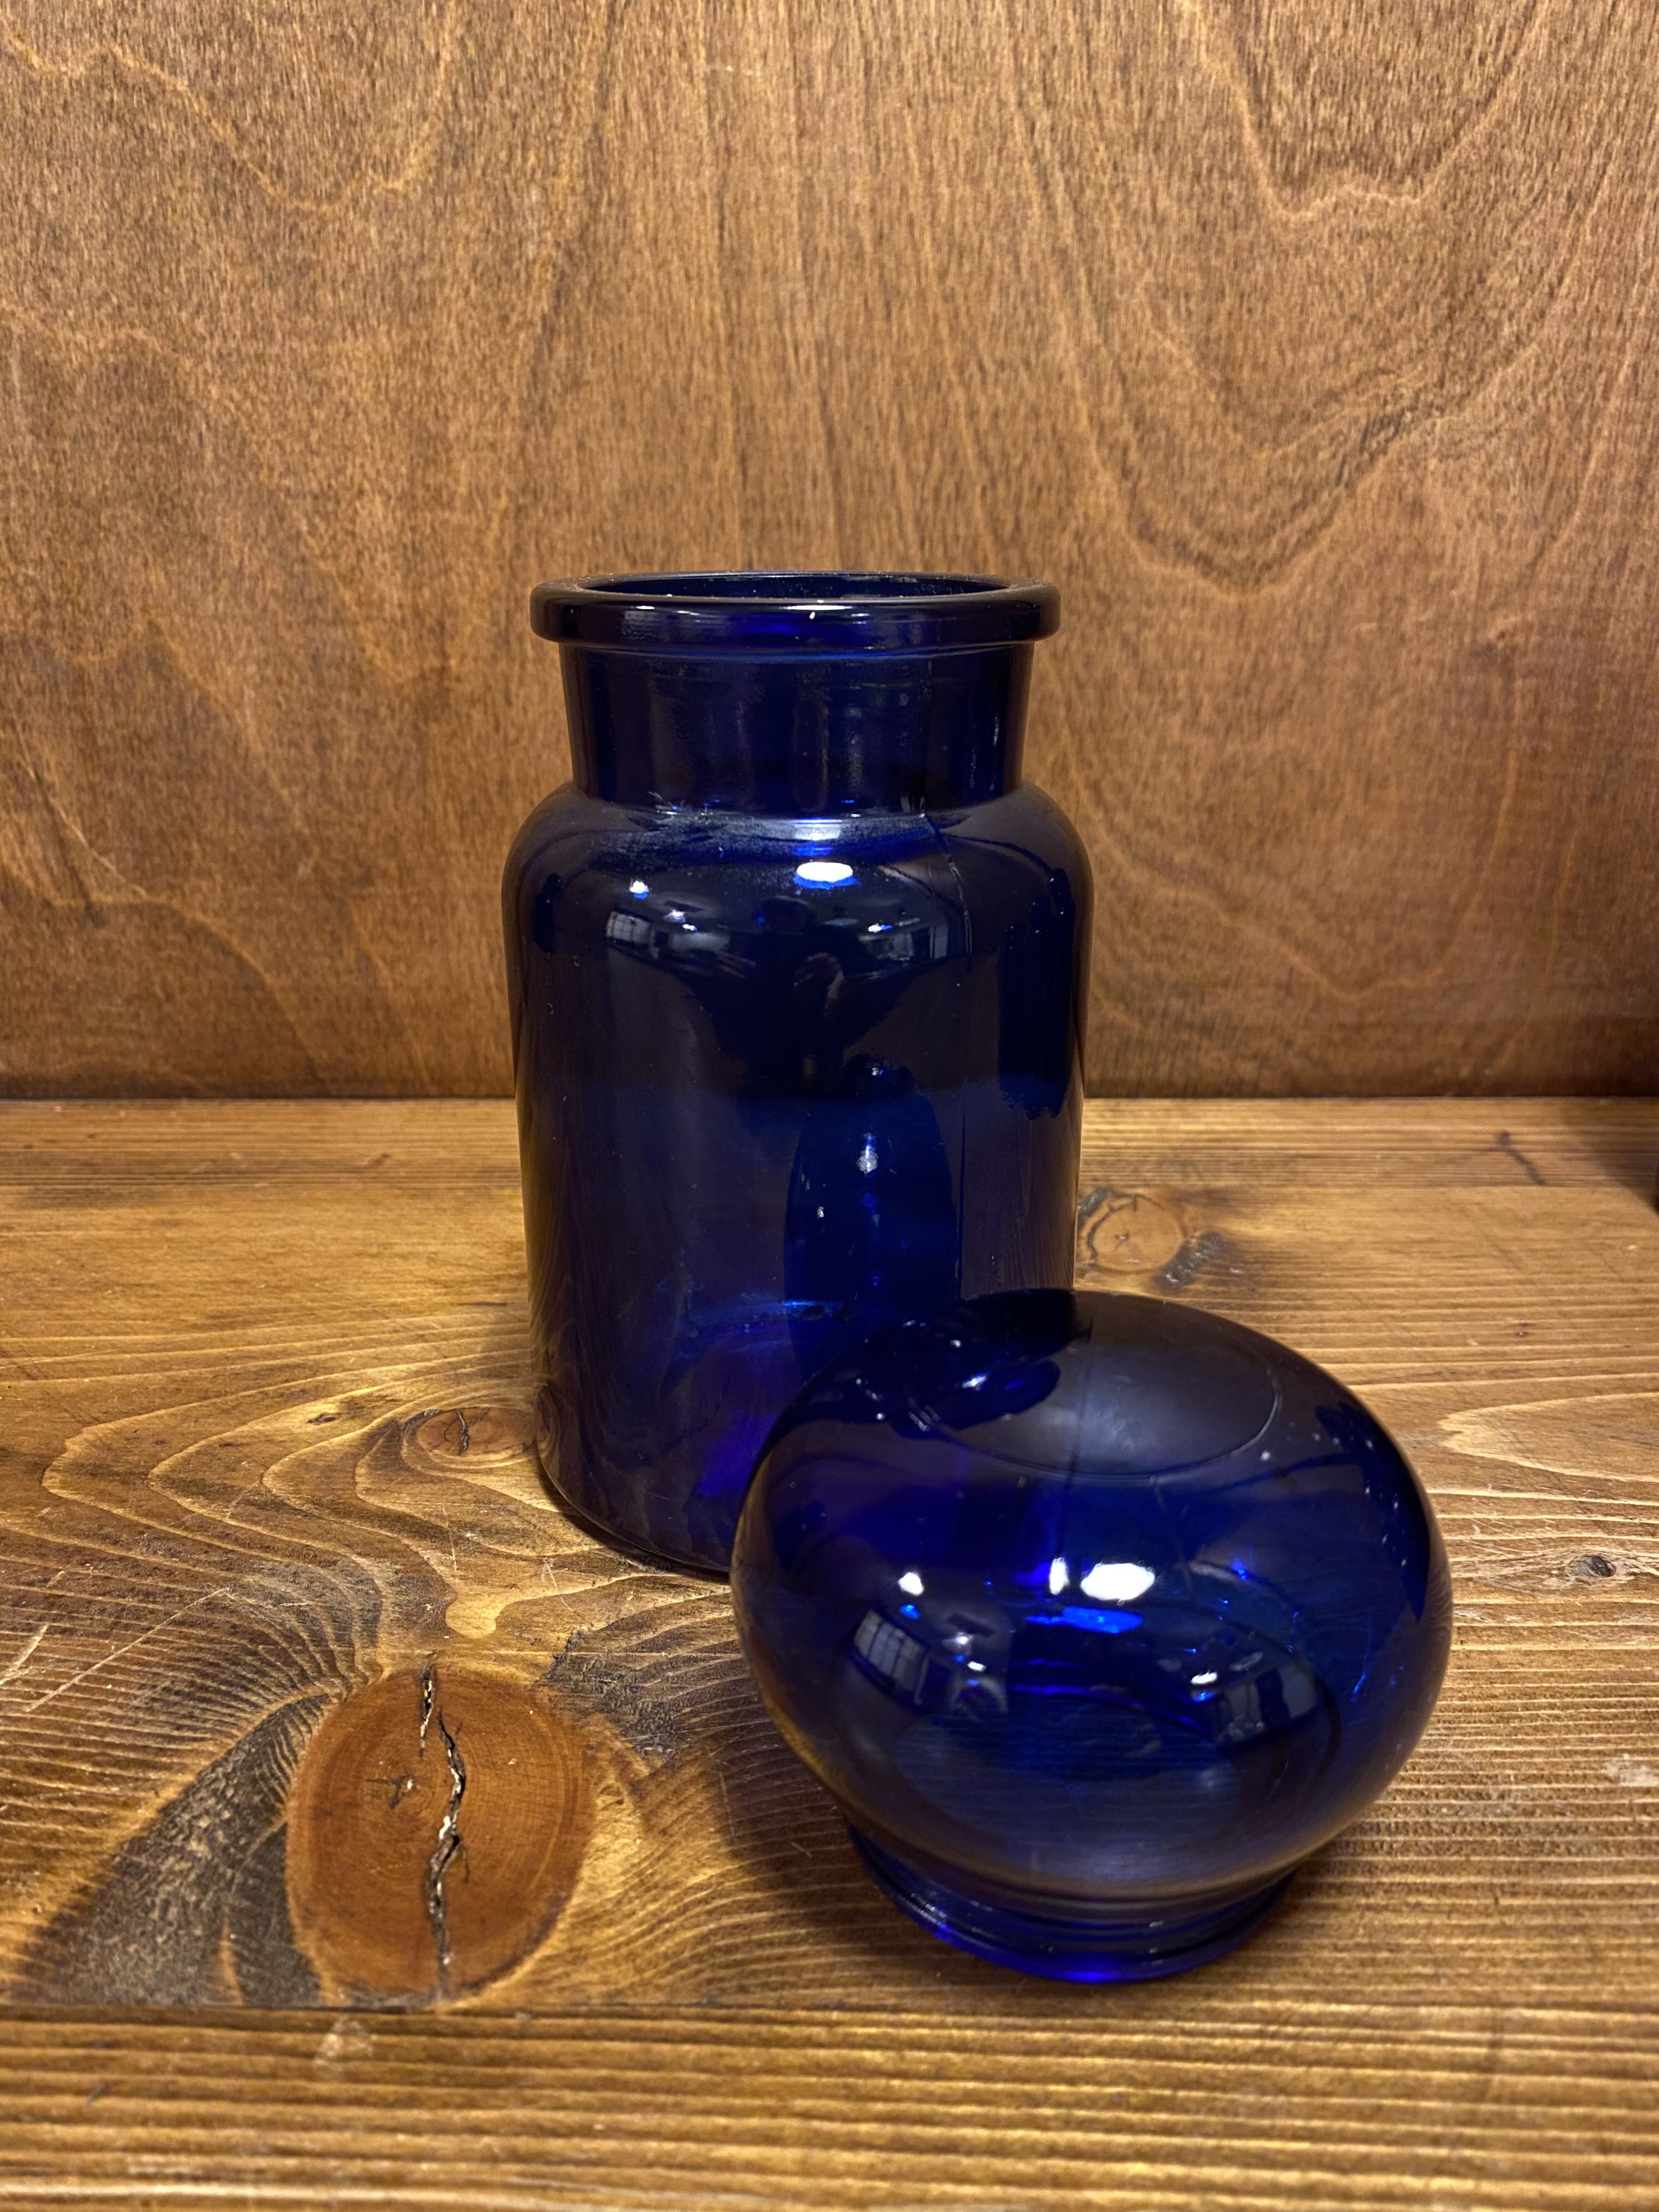 Blue bottle set